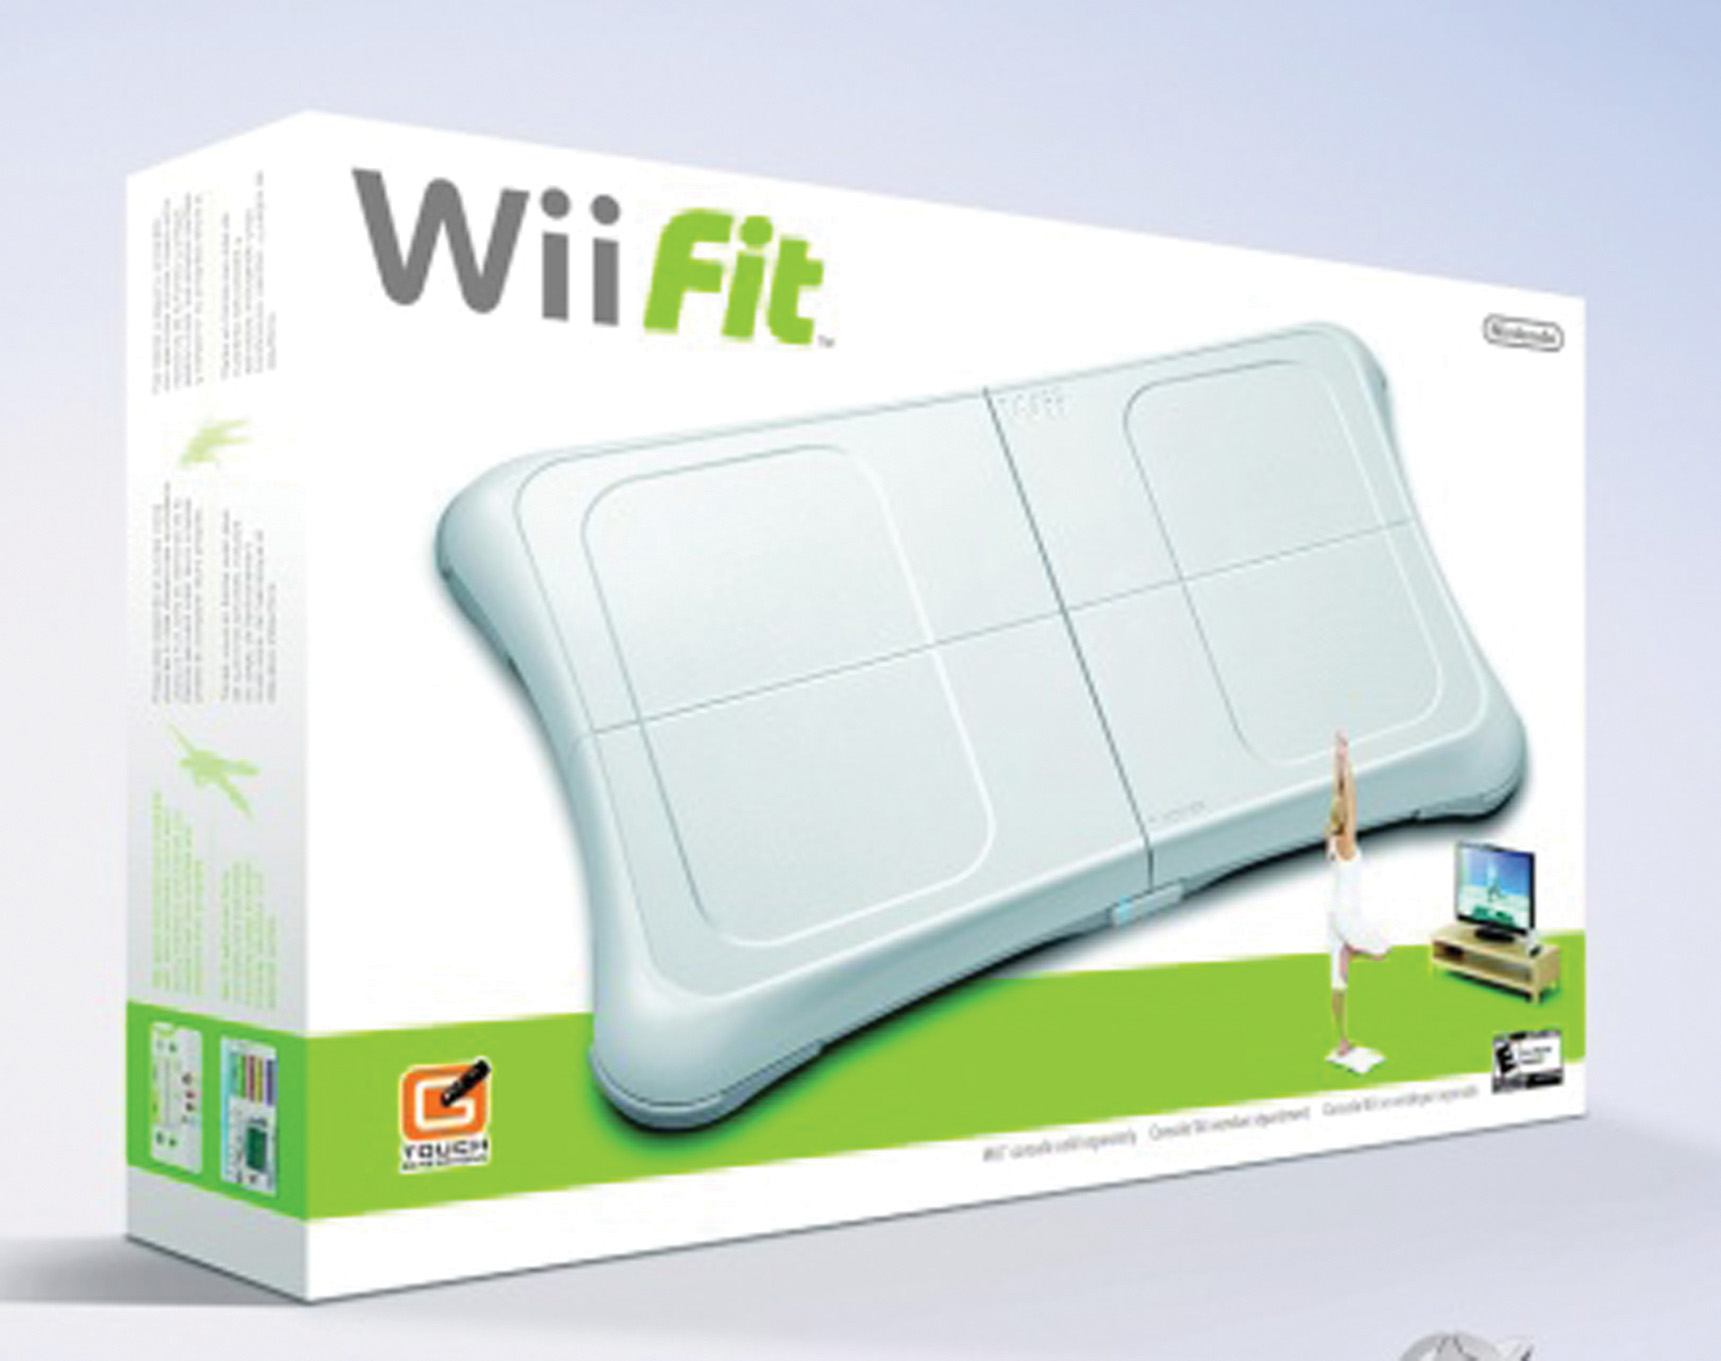 Motiva el Wii Fit a ponerse en forma